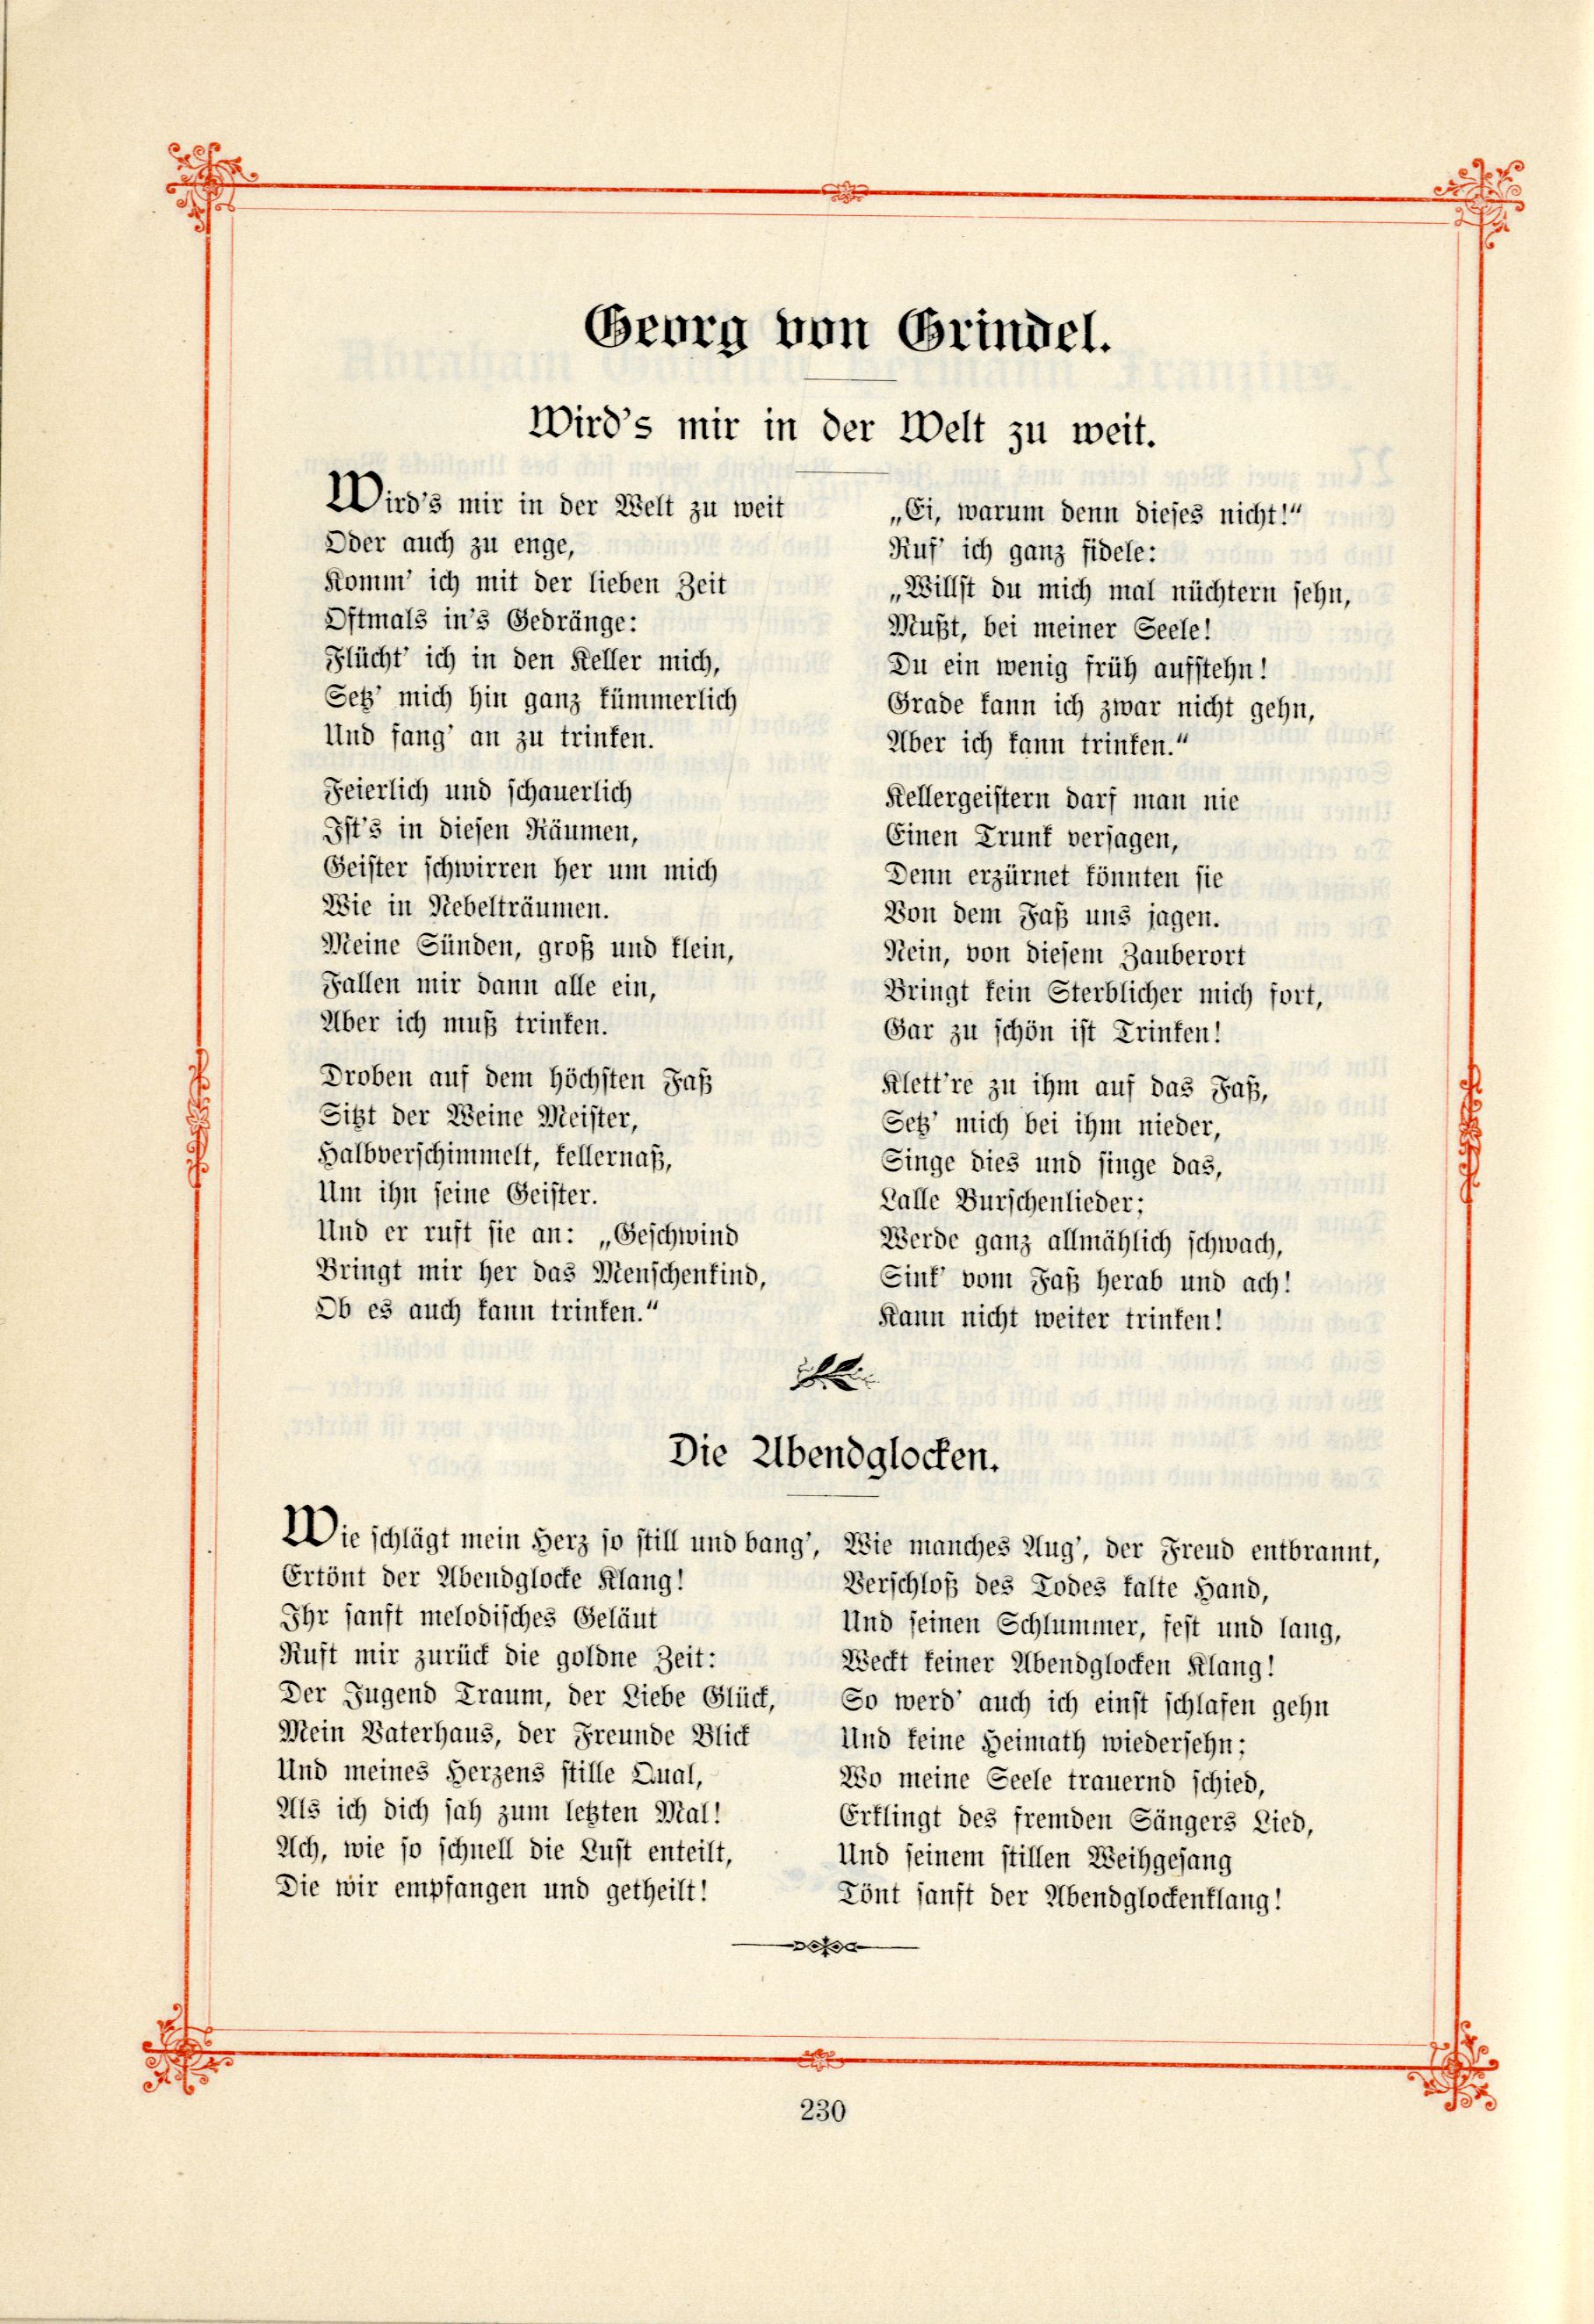 Das Baltische Dichterbuch (1895) | 276. (230) Main body of text